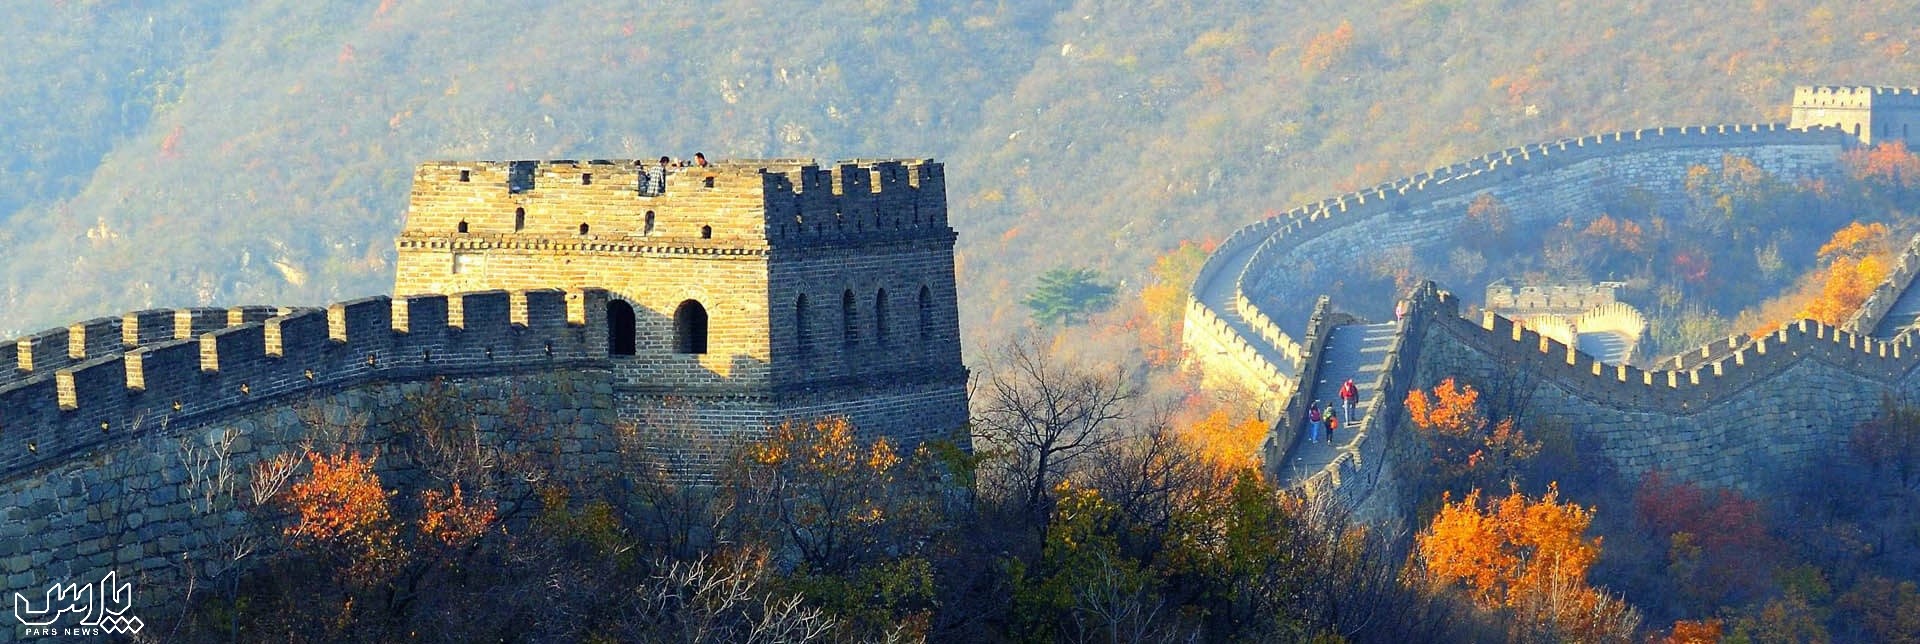 دیوار بزرگ چین - عجایب هفت گانه ی دنیا